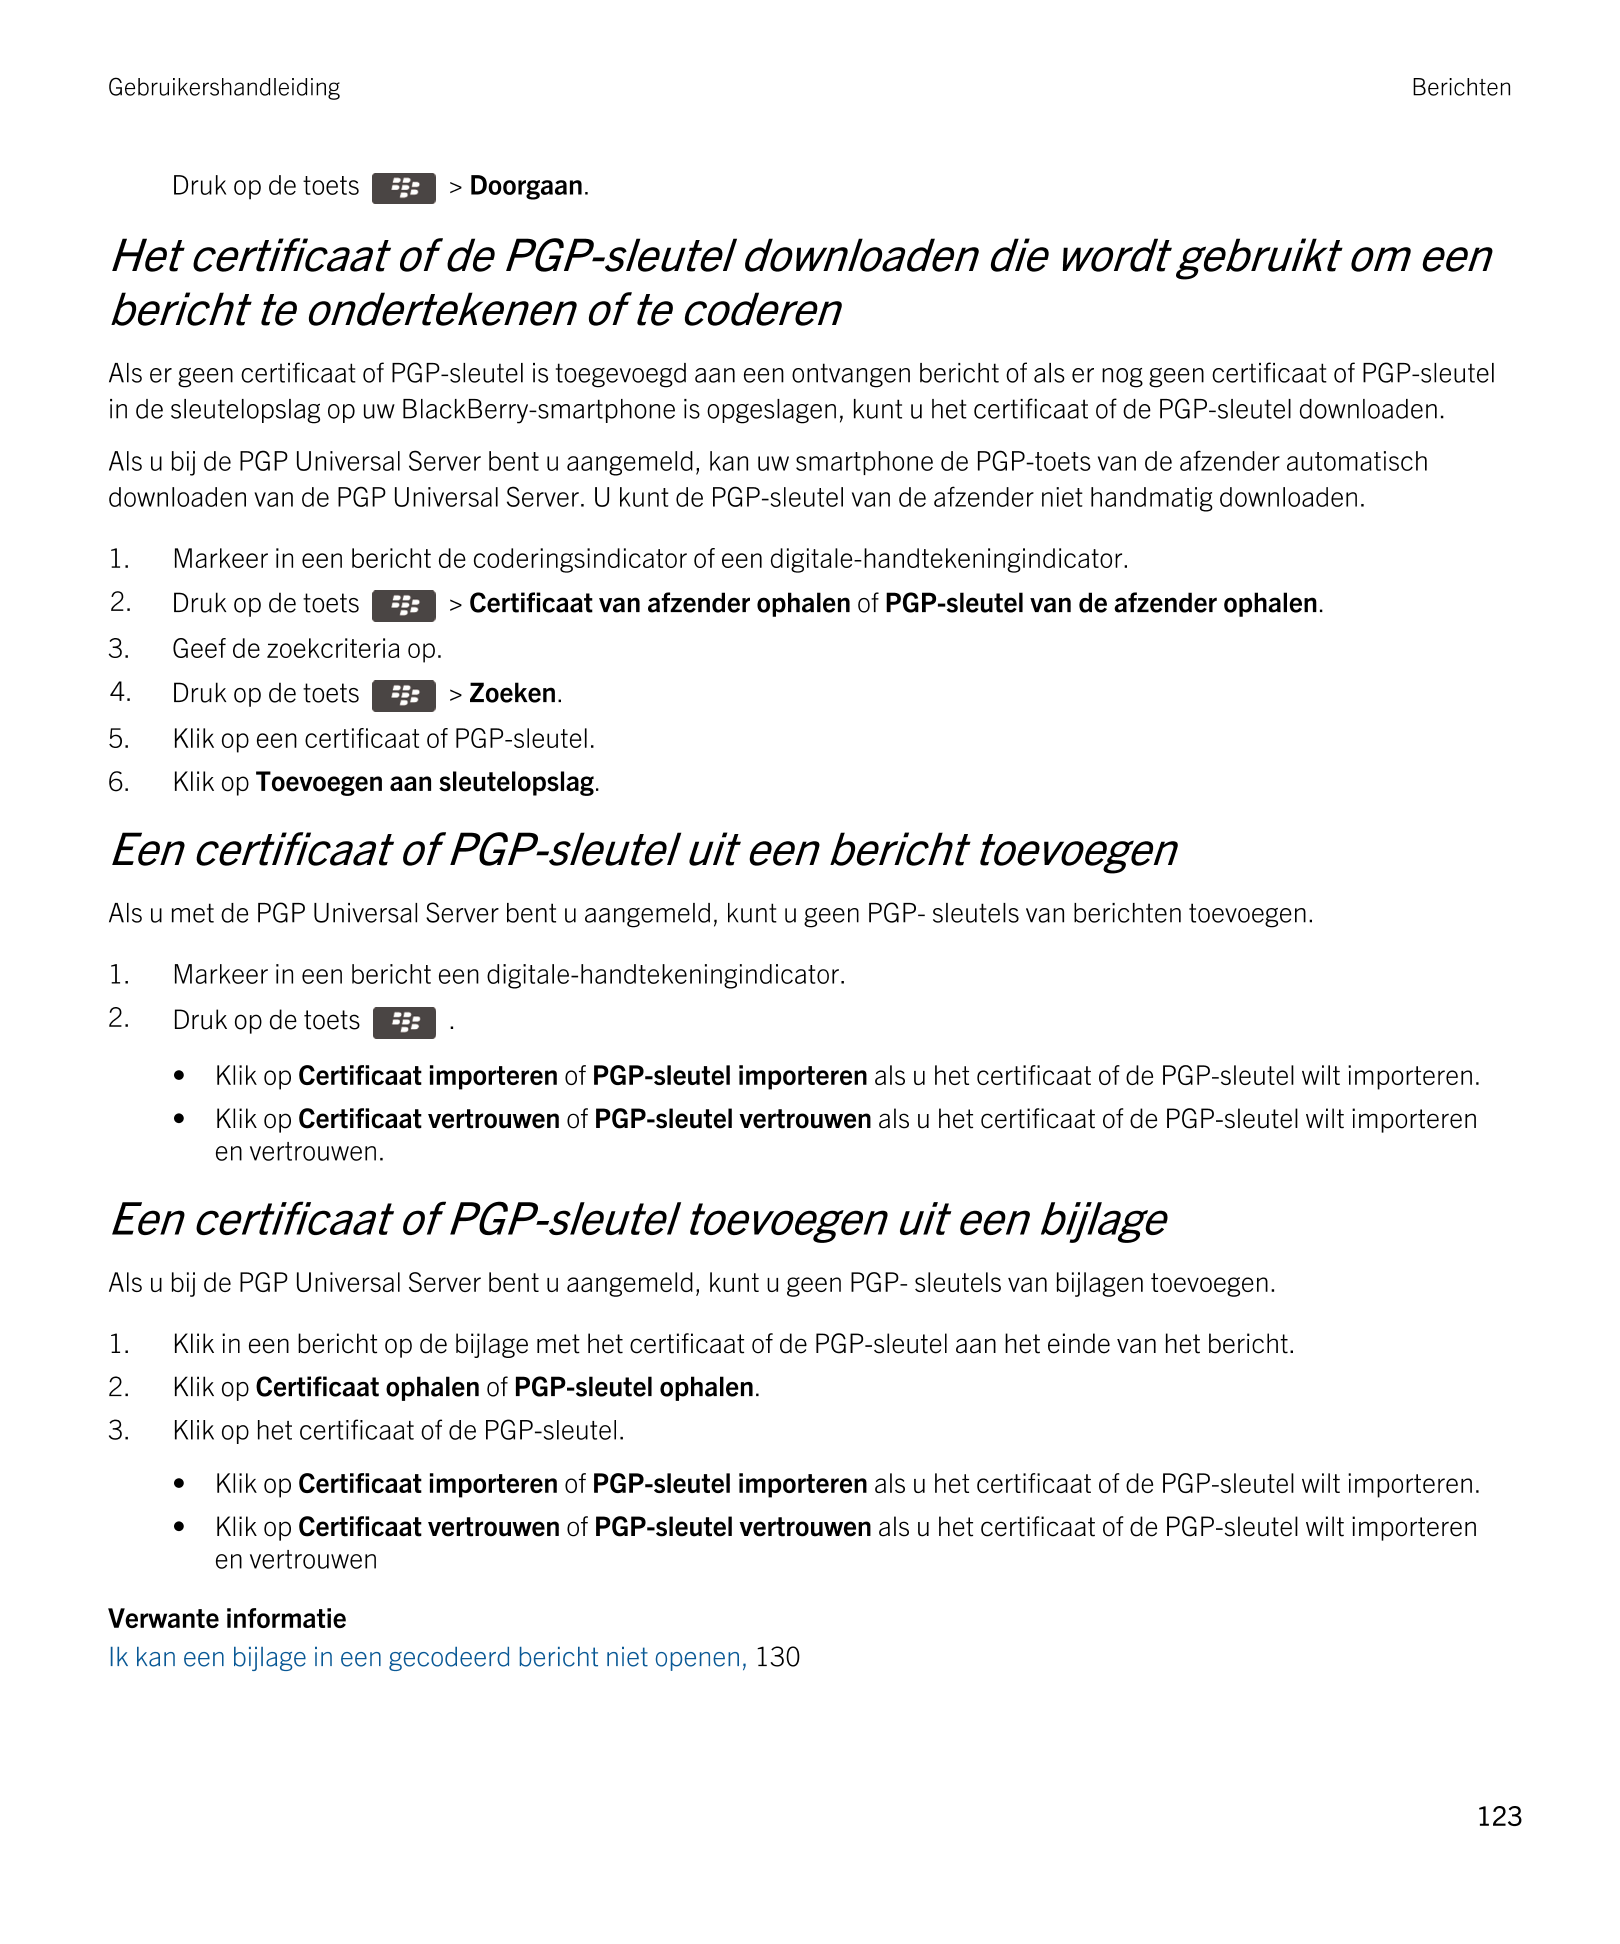 Gebruikershandleiding Berichten
Druk op de toets    >  Doorgaan. 
Het certificaat of de  PGP-sleutel downloaden die wordt gebrui